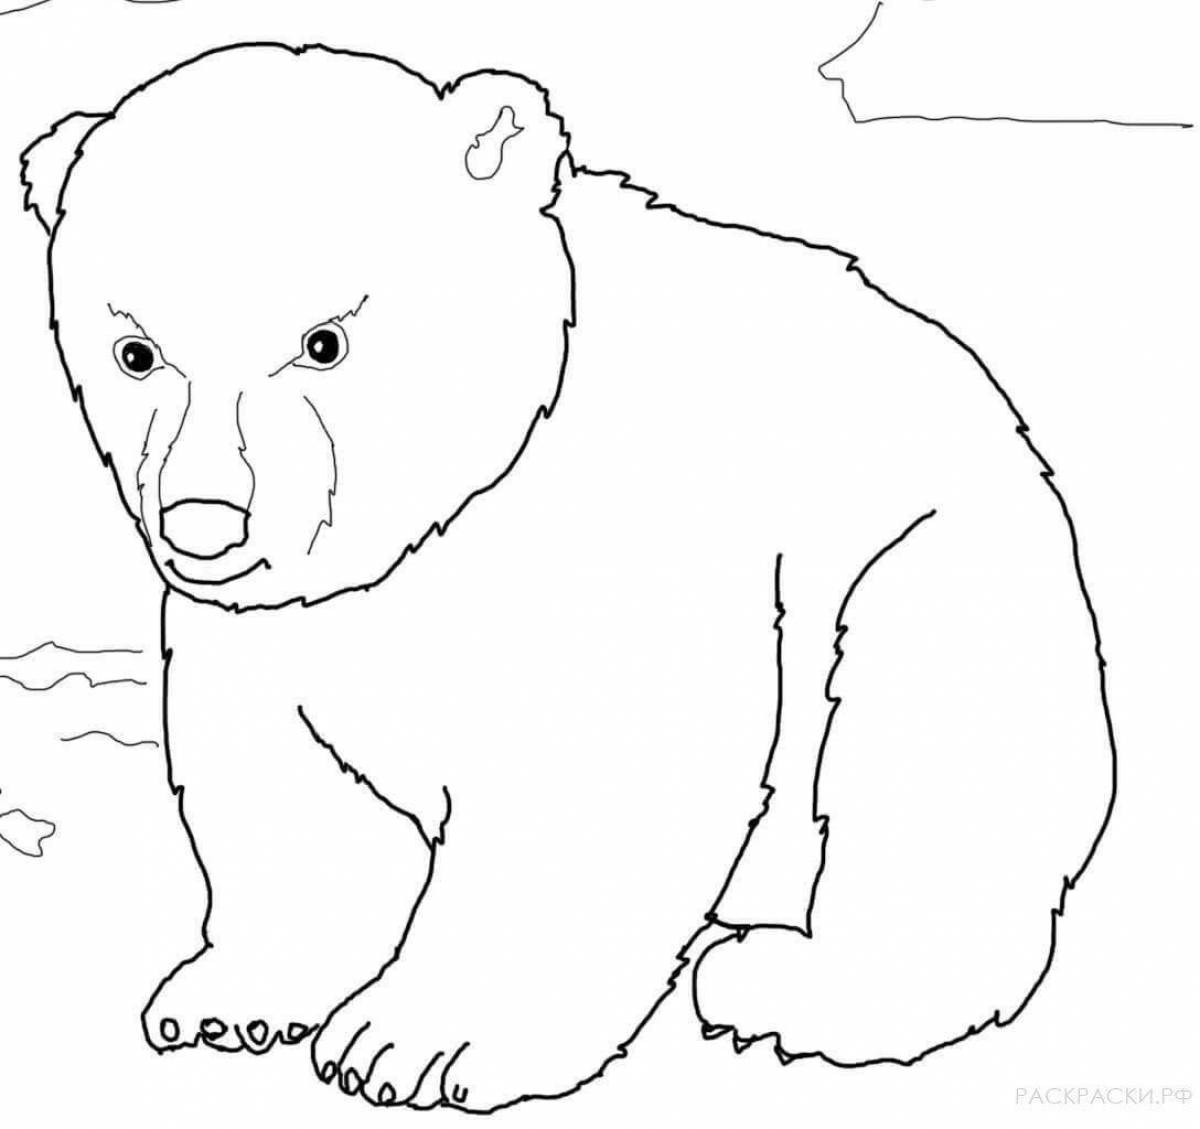 Adorable polar bear coloring book for preschoolers